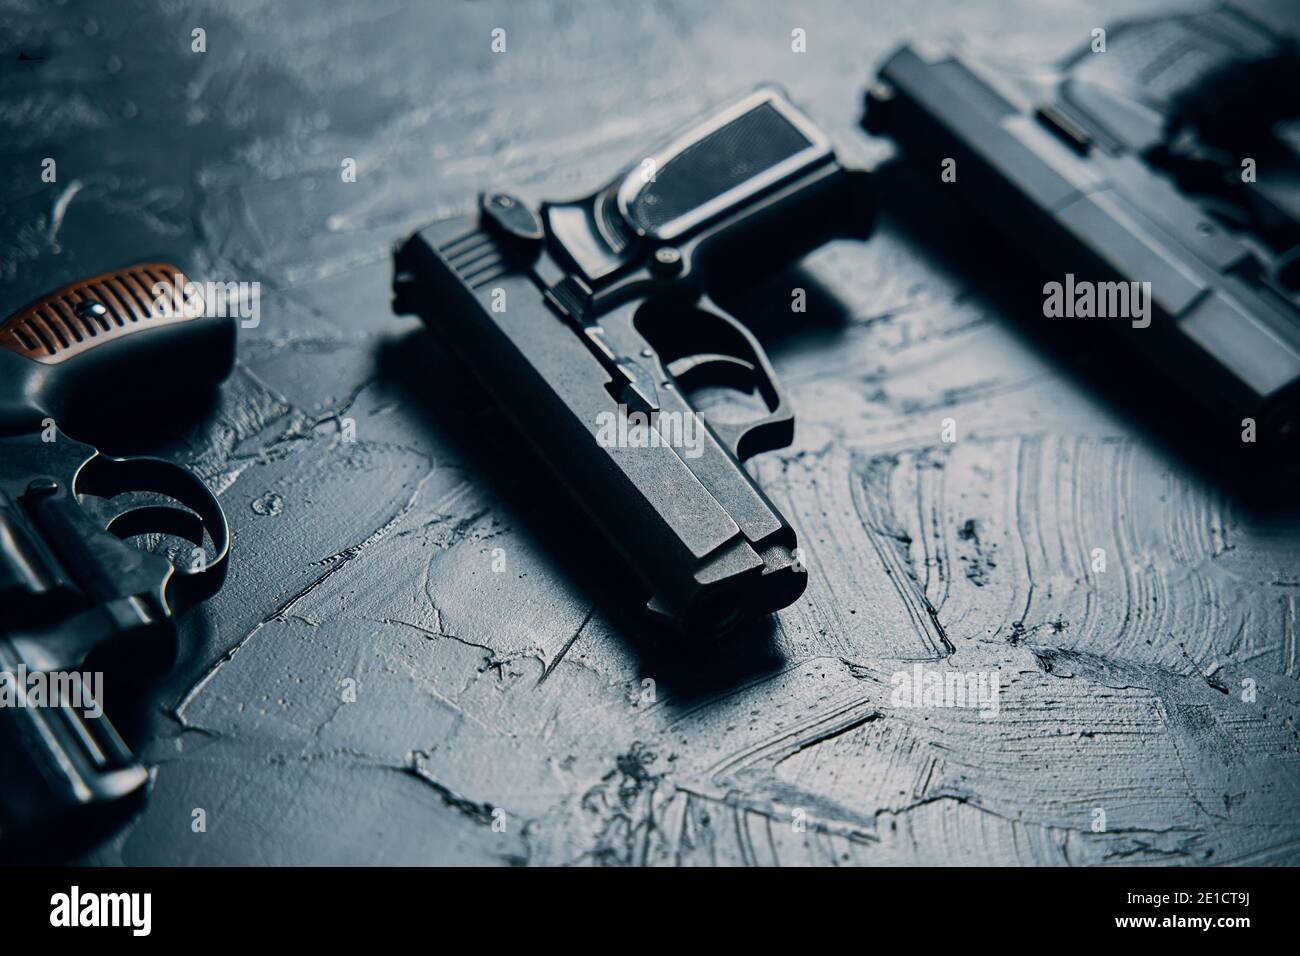 Groupe de pistolets sur table en béton noir. Revolver vintage avec tambour. pistolet 9 mm. Plusieurs types d'armes à feu dangereuses. Arsenal criminel ou policier. Banque D'Images